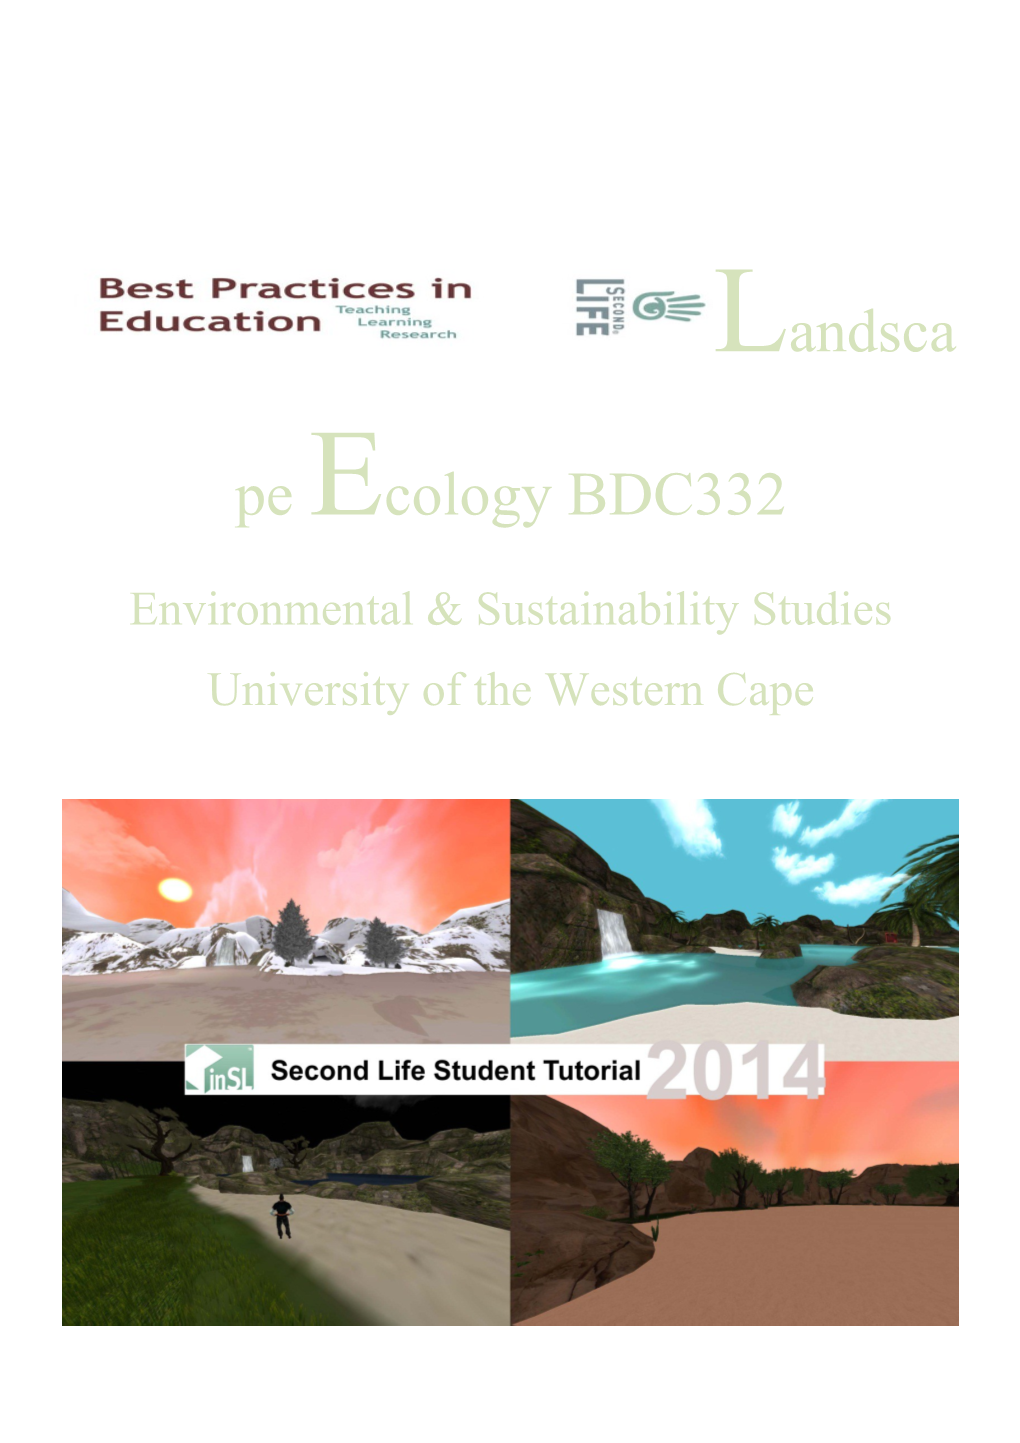 Landscape Ecology BDC332